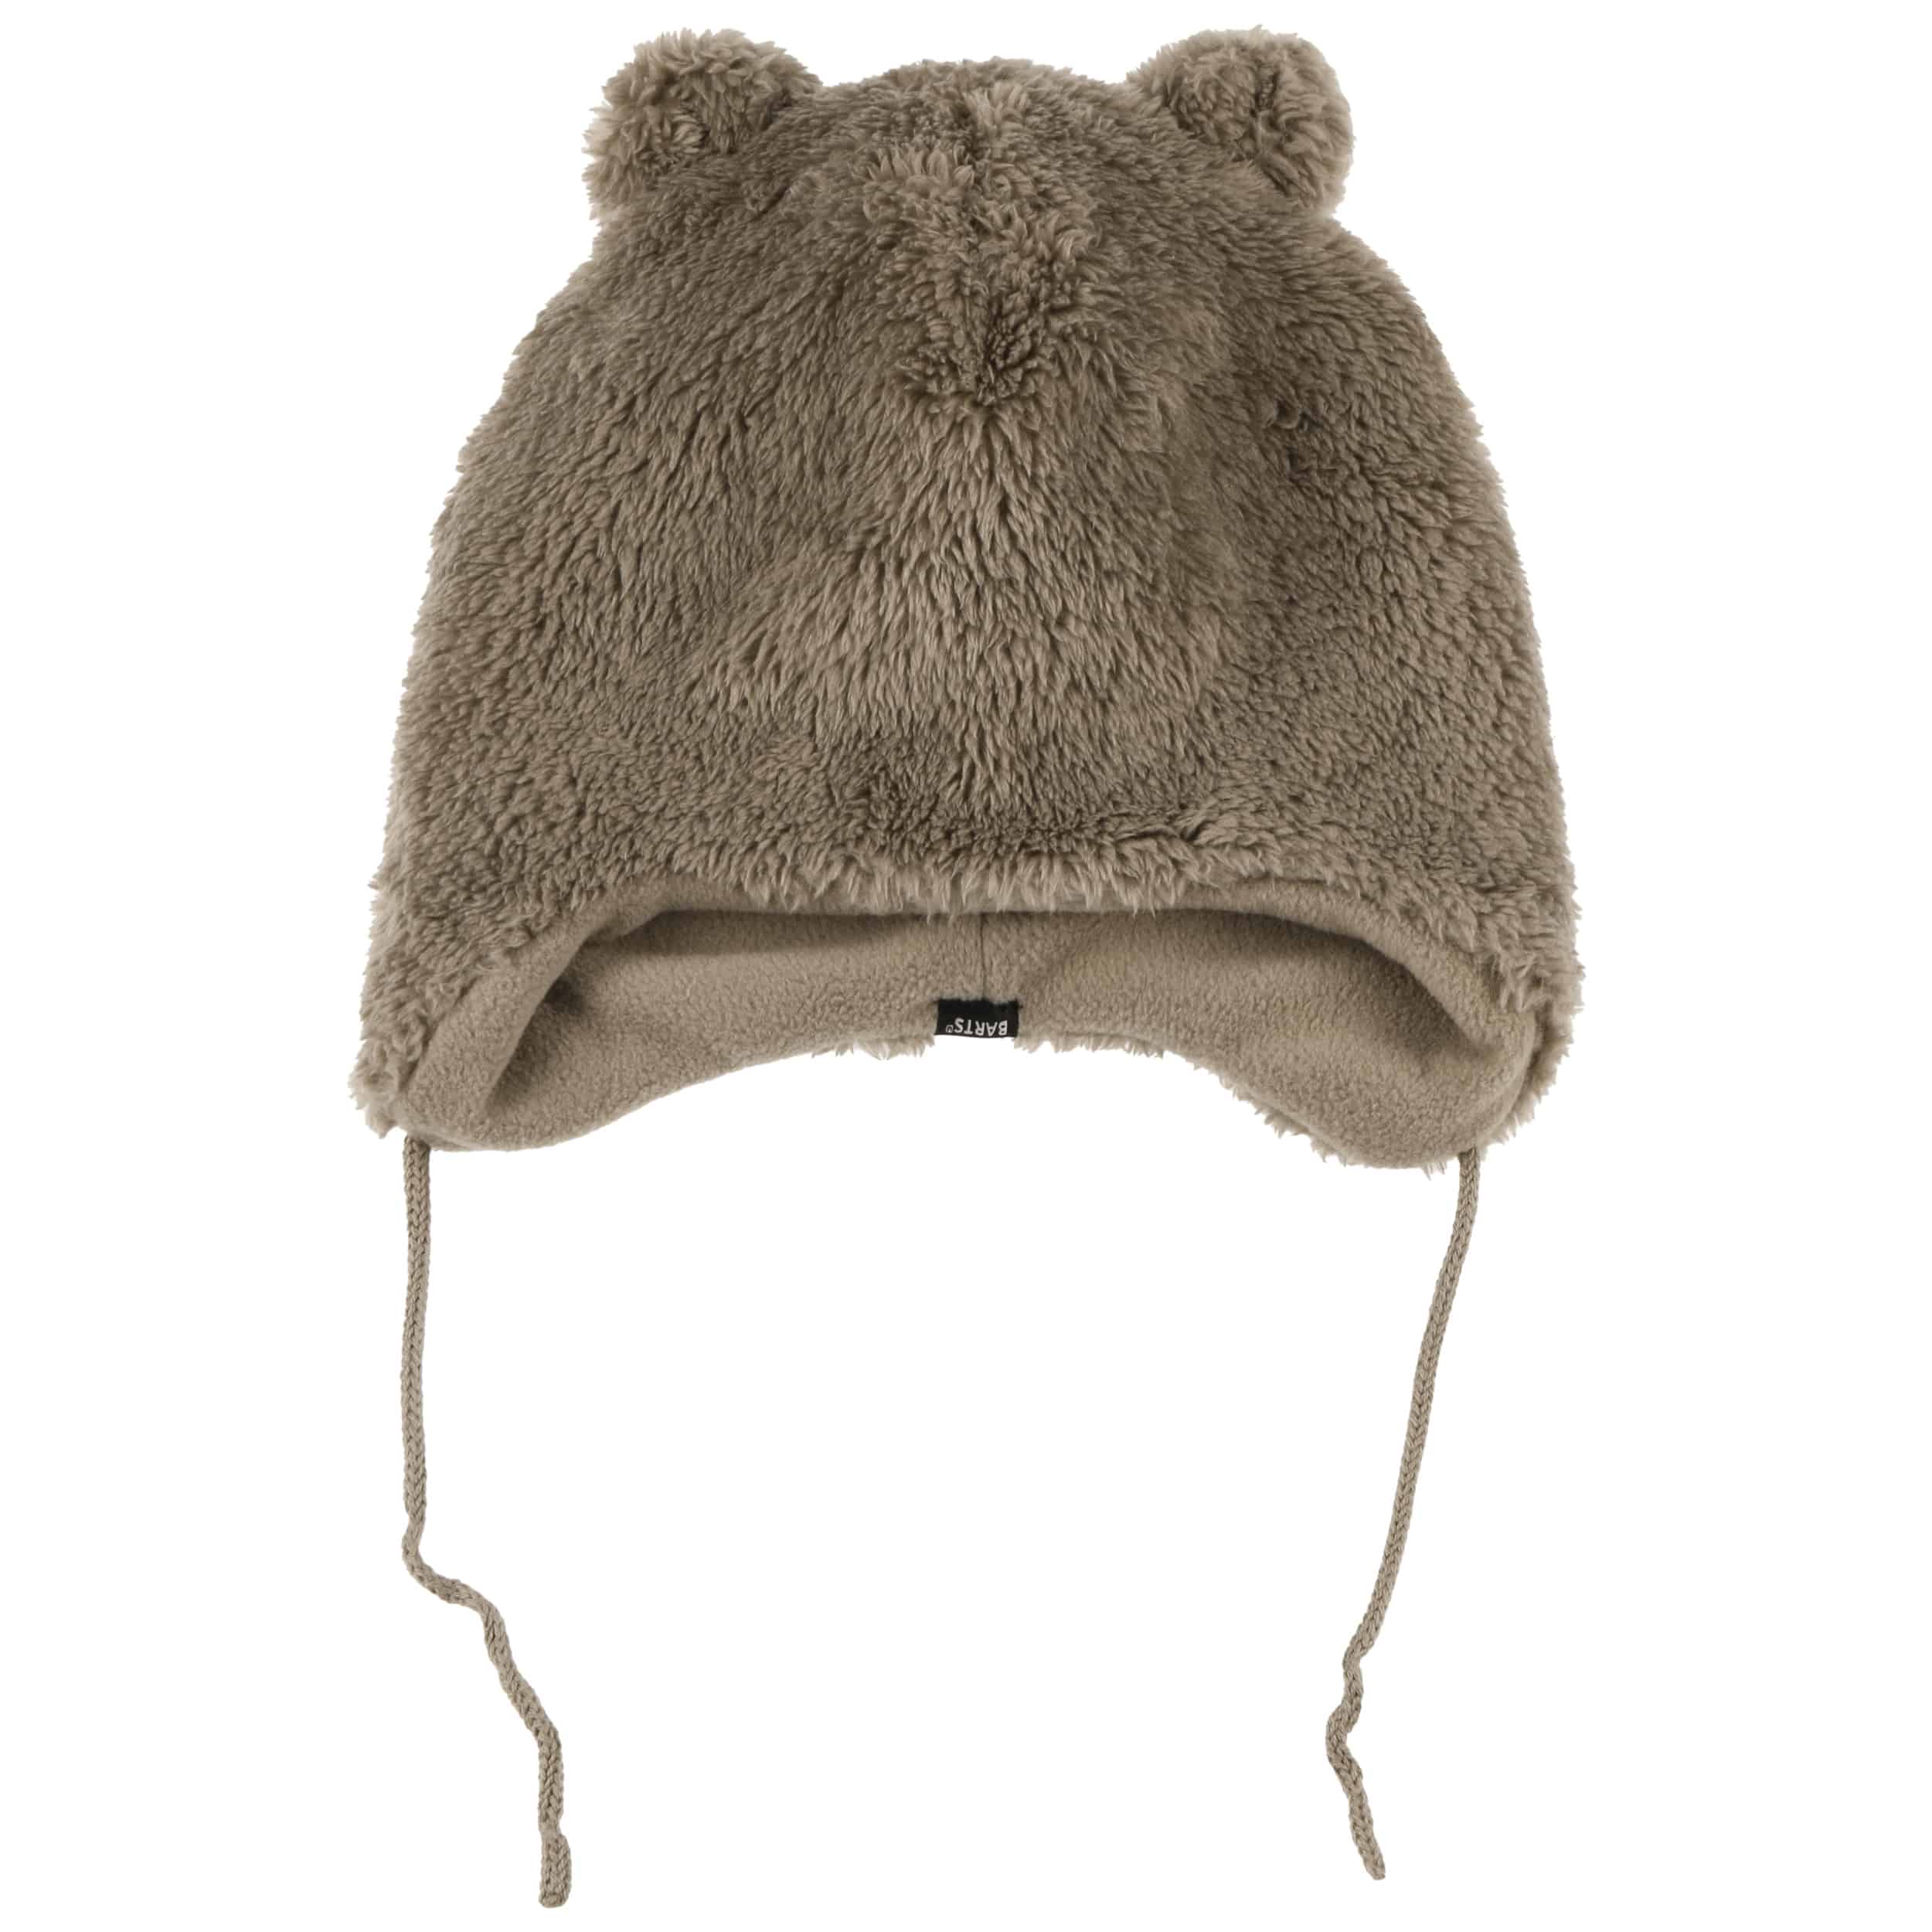 Noa Bear Kids Winter Hat by Barts - 21,95